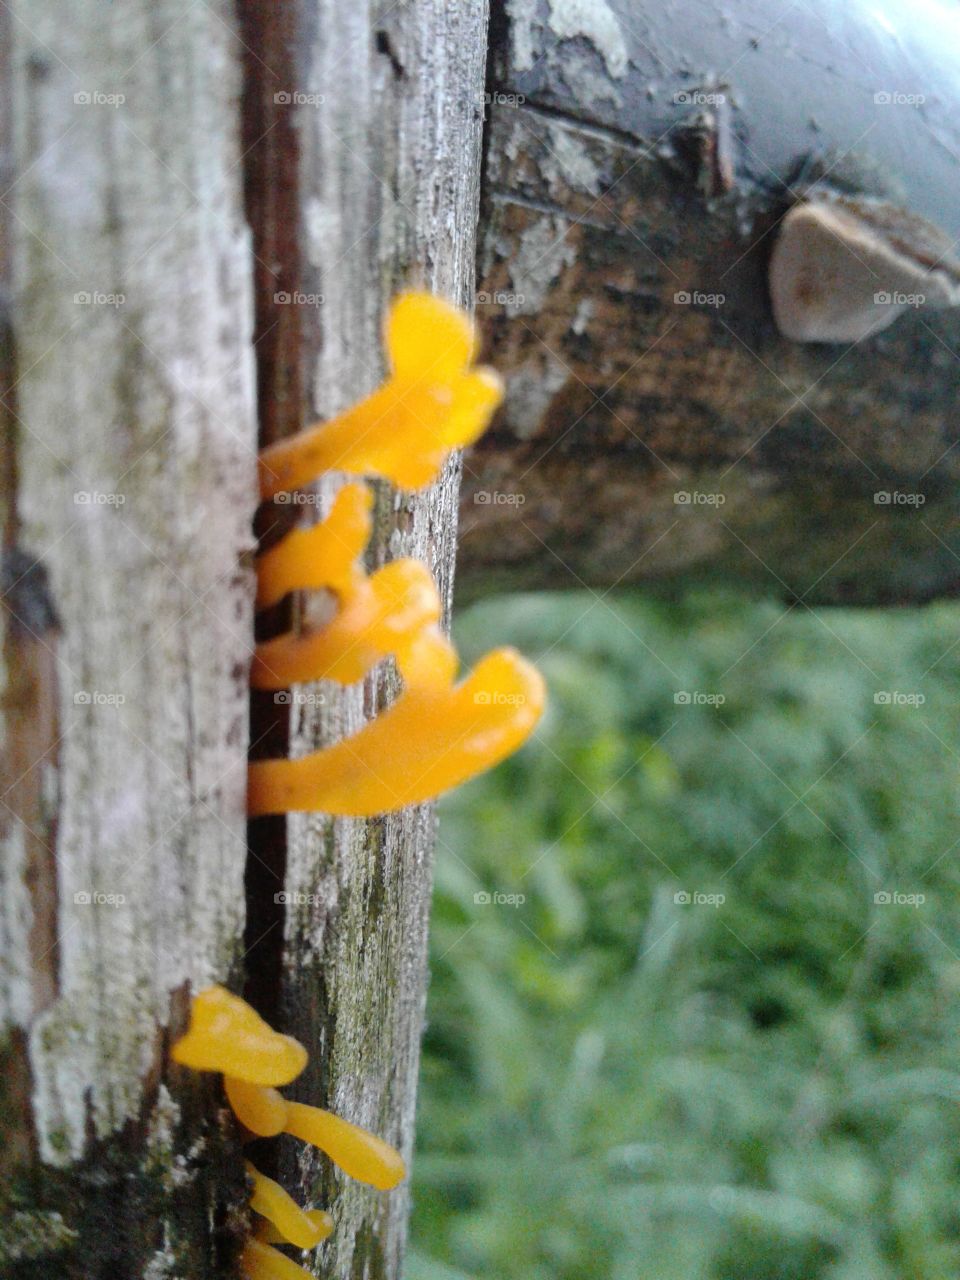 yellow fungi